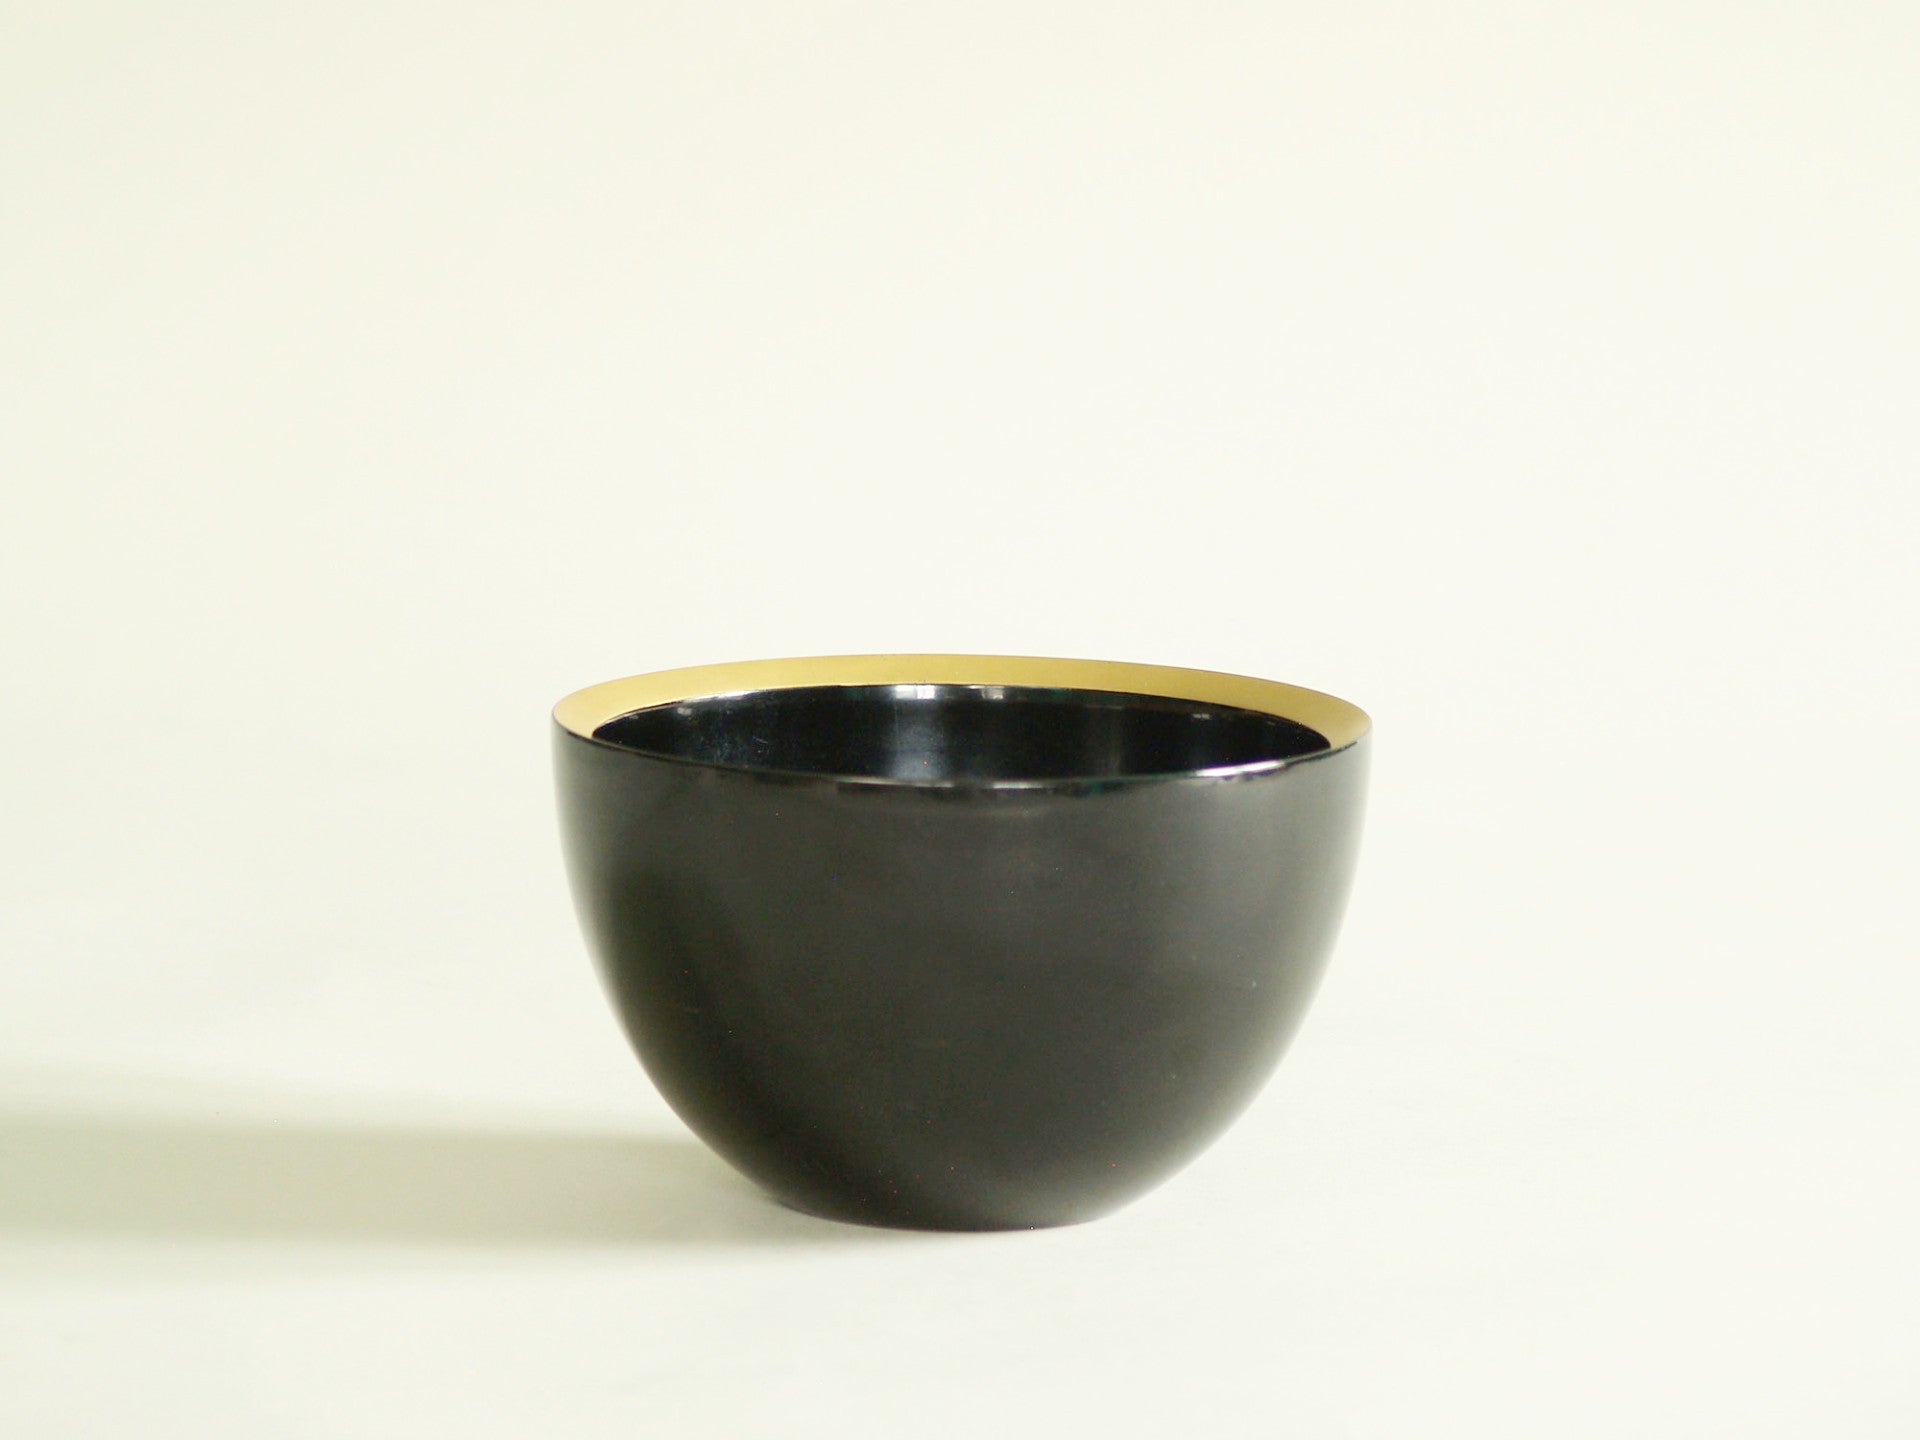 Coupe Mingei Haisen en laque, Japon (vers 1930)..Mingei Haisen lacquer Bowl, Japan (circa 1930)